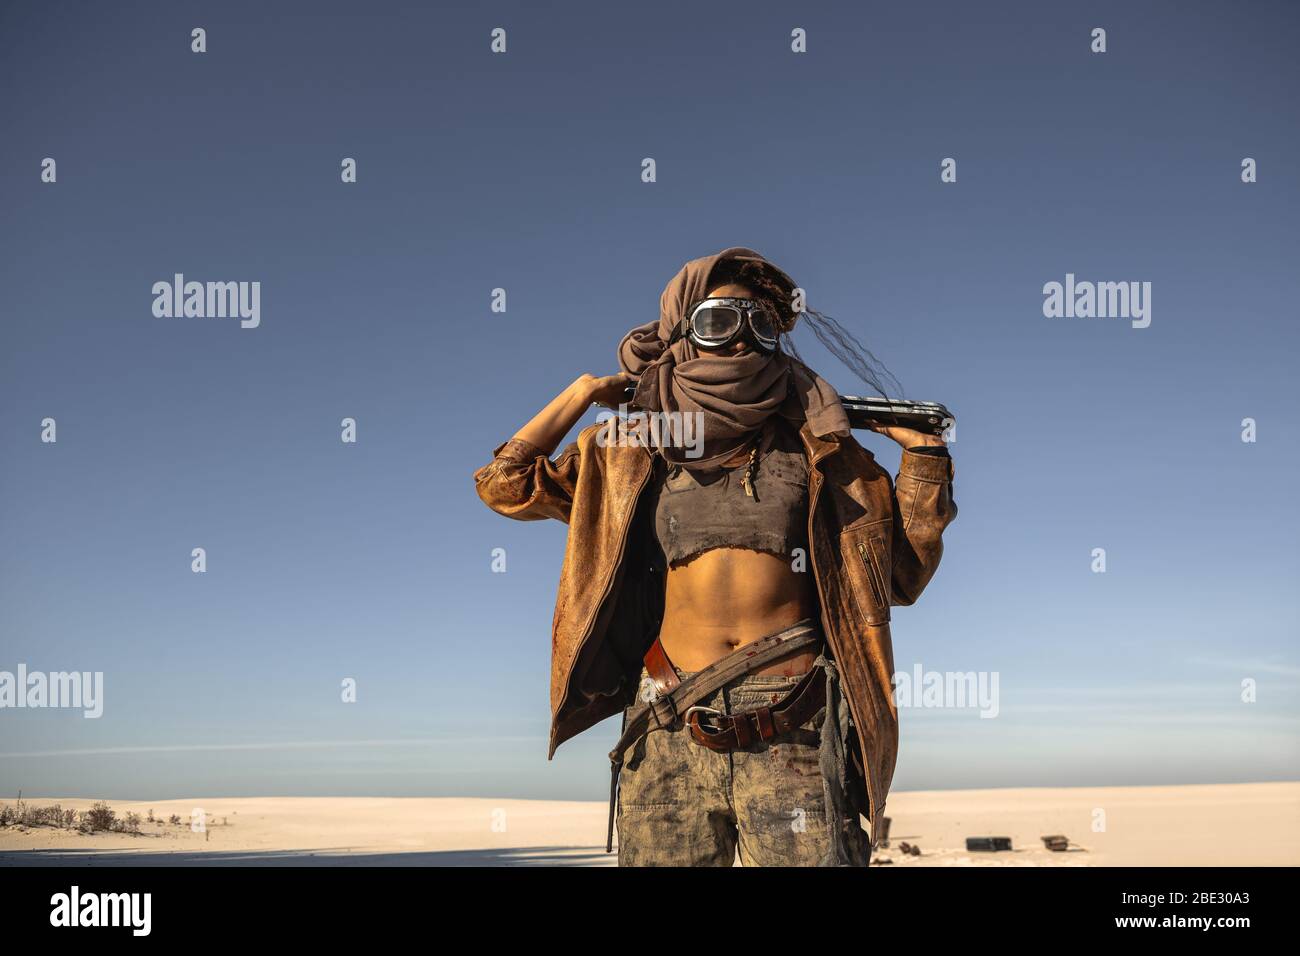 Femme de cyberpunk post-apocalyptique avec arme à l'extérieur. Jeune fille  guerrier en vêtements de sabby tenant l'épée debout dans une posture sûre  regardant l'appareil photo. Le temps de l'après-apocalypse nucléaire. La vie